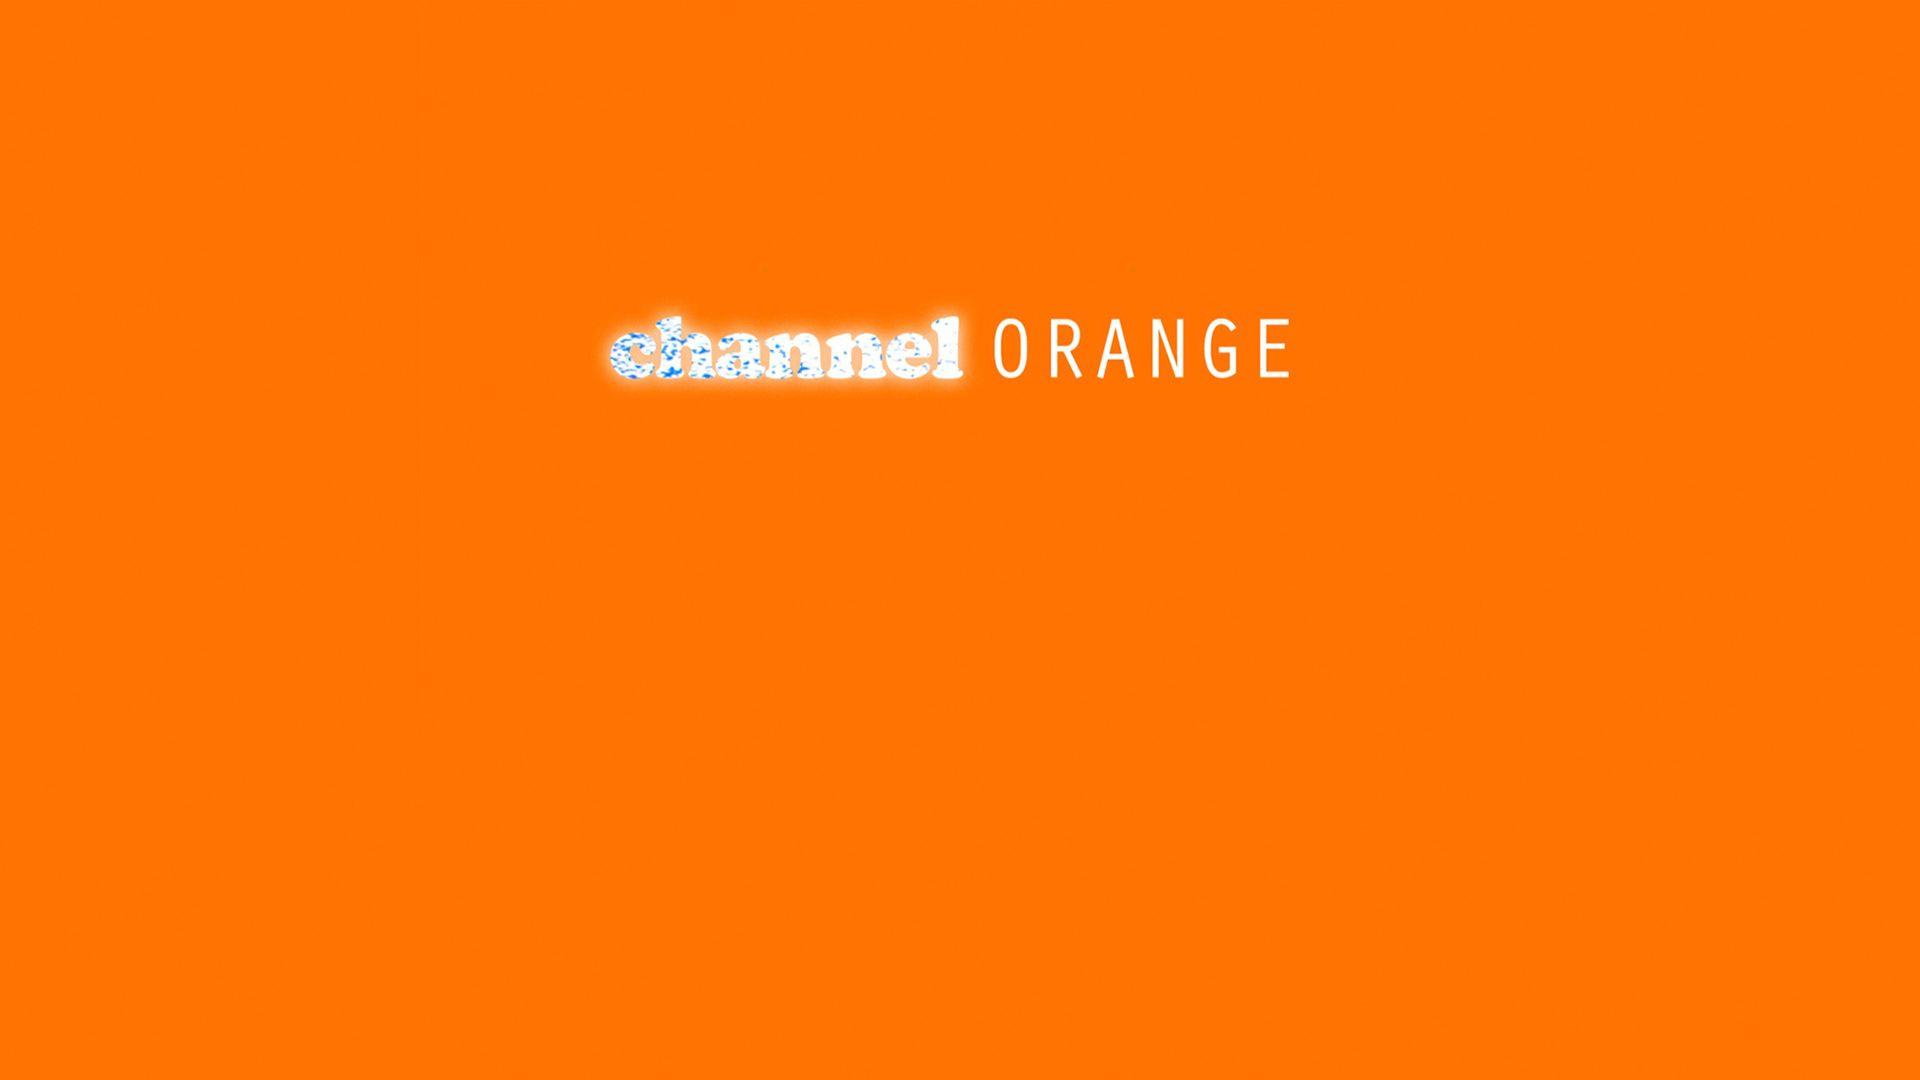 Hình nền Channel Orange là lựa chọn hoàn hảo cho những ai yêu thích màu cam tươi sáng, nổi bật. Từ thiết kế đơn giản đến phức tạp, hình ảnh nền Channel Orange sẽ mang đến cho bạn nhiều sự lựa chọn để tạo nên màn hình desktop độc đáo và ấn tượng.